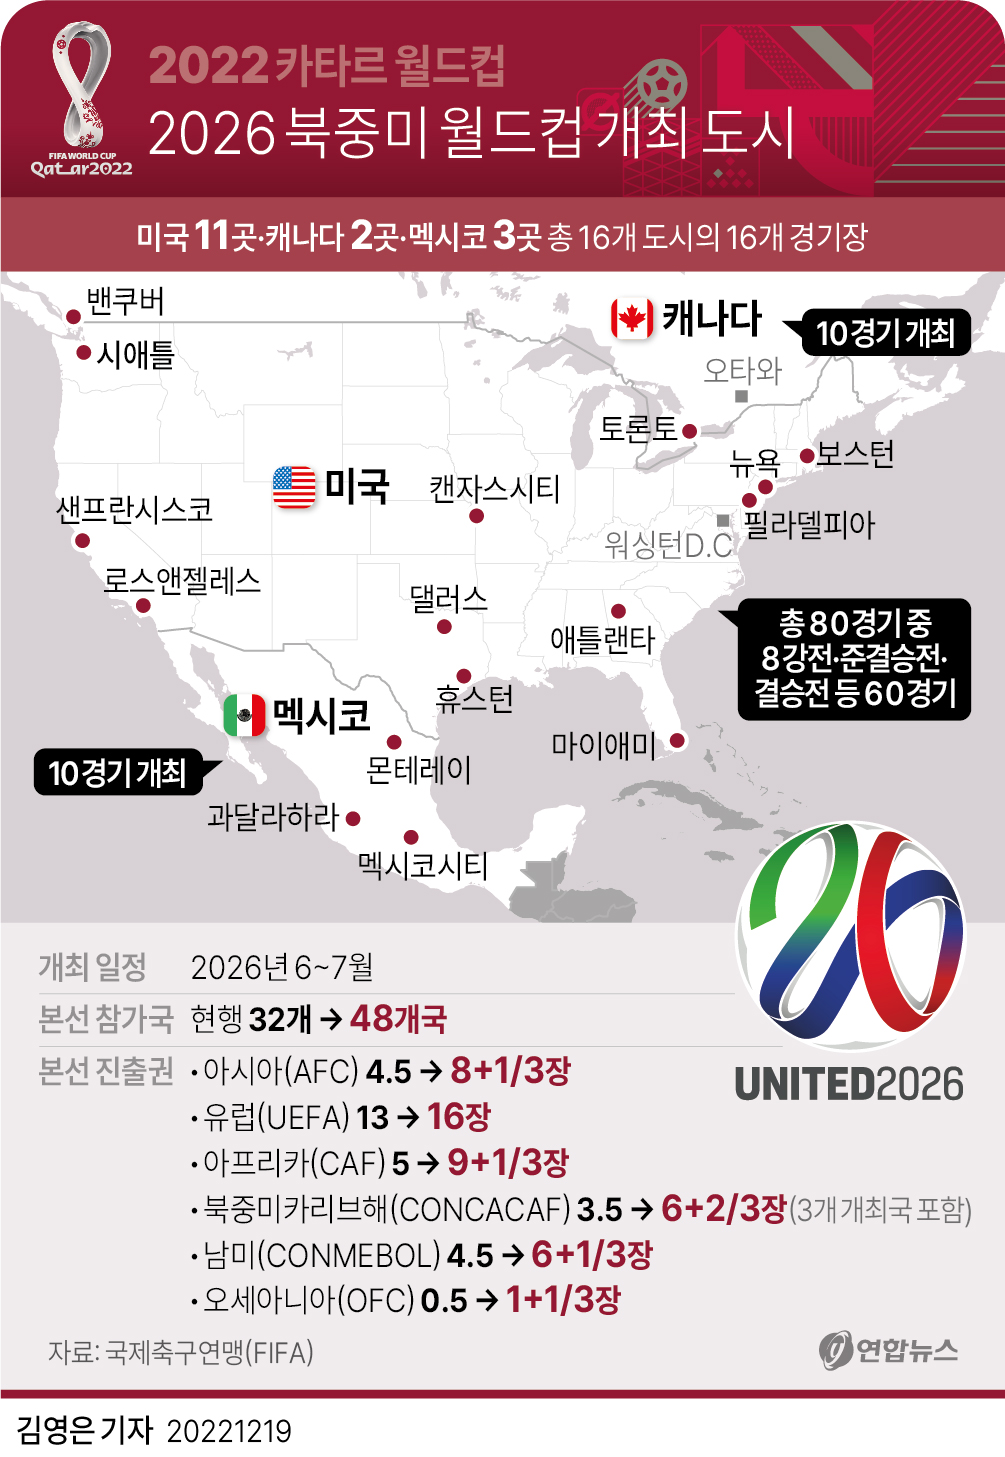 [그래픽] 2026 북중미 월드컵 개최 도시